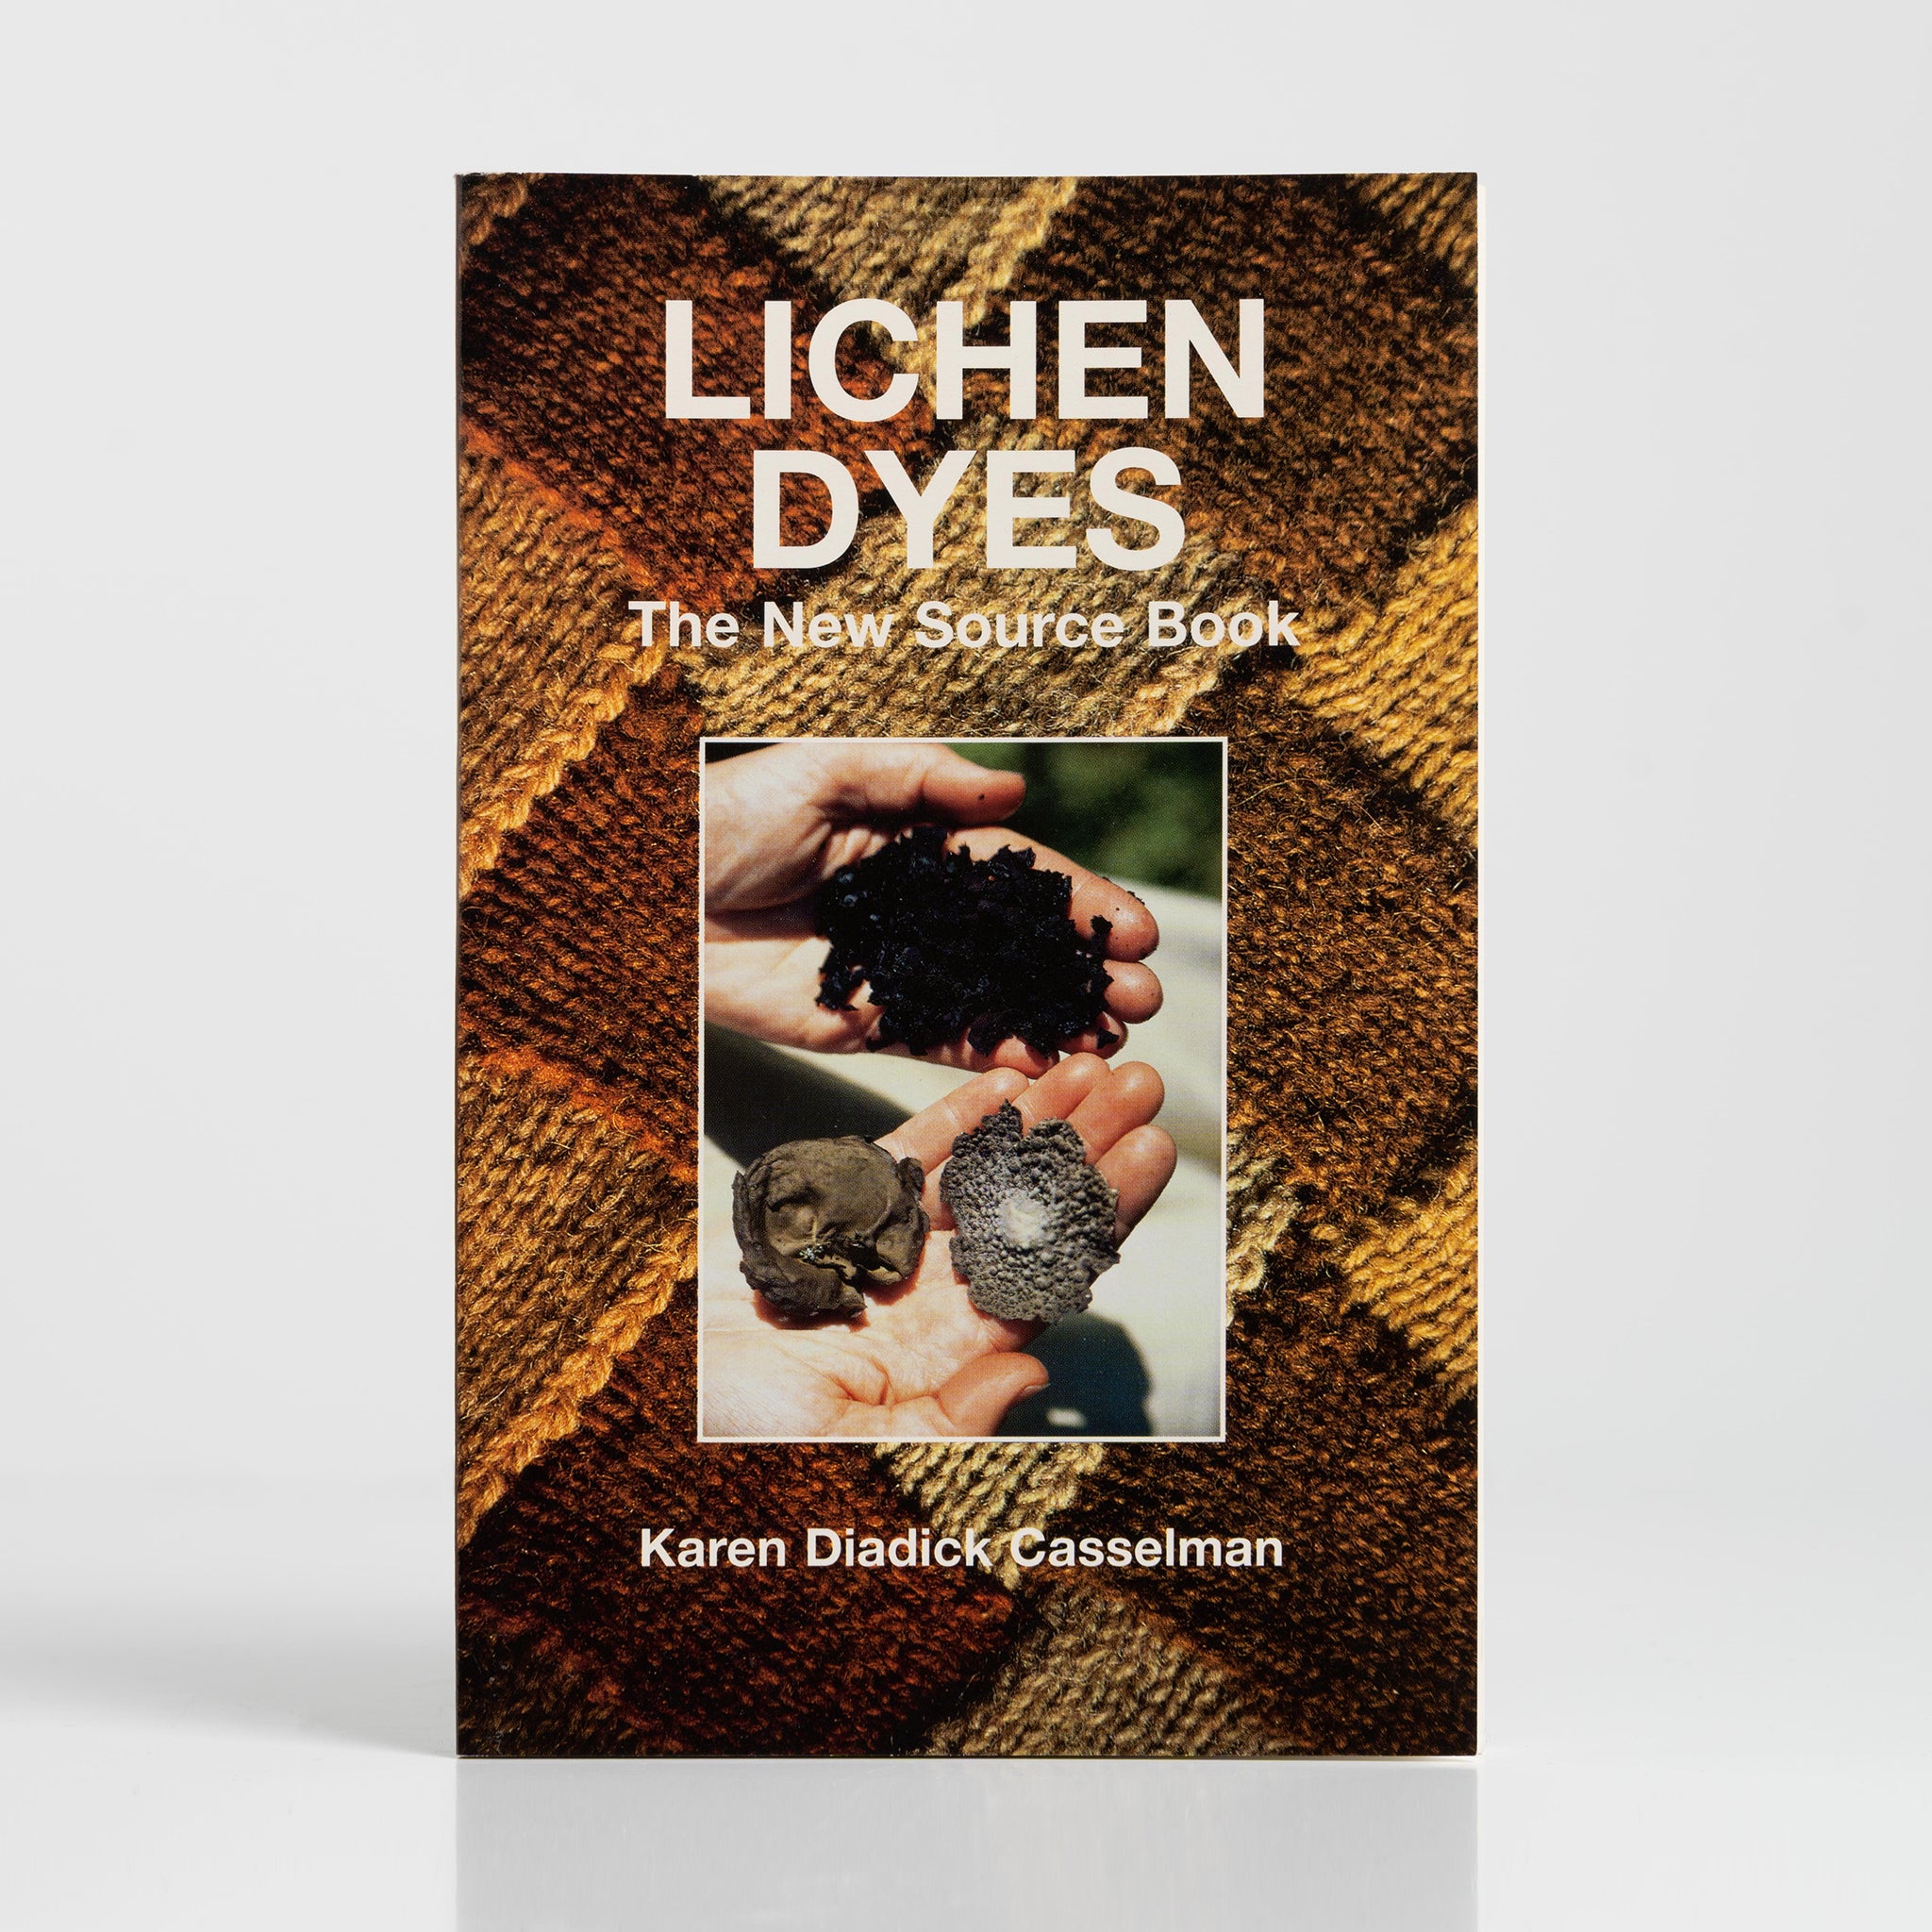 Lichen Dyes: The New Source Book by Karen Diadick Casselman